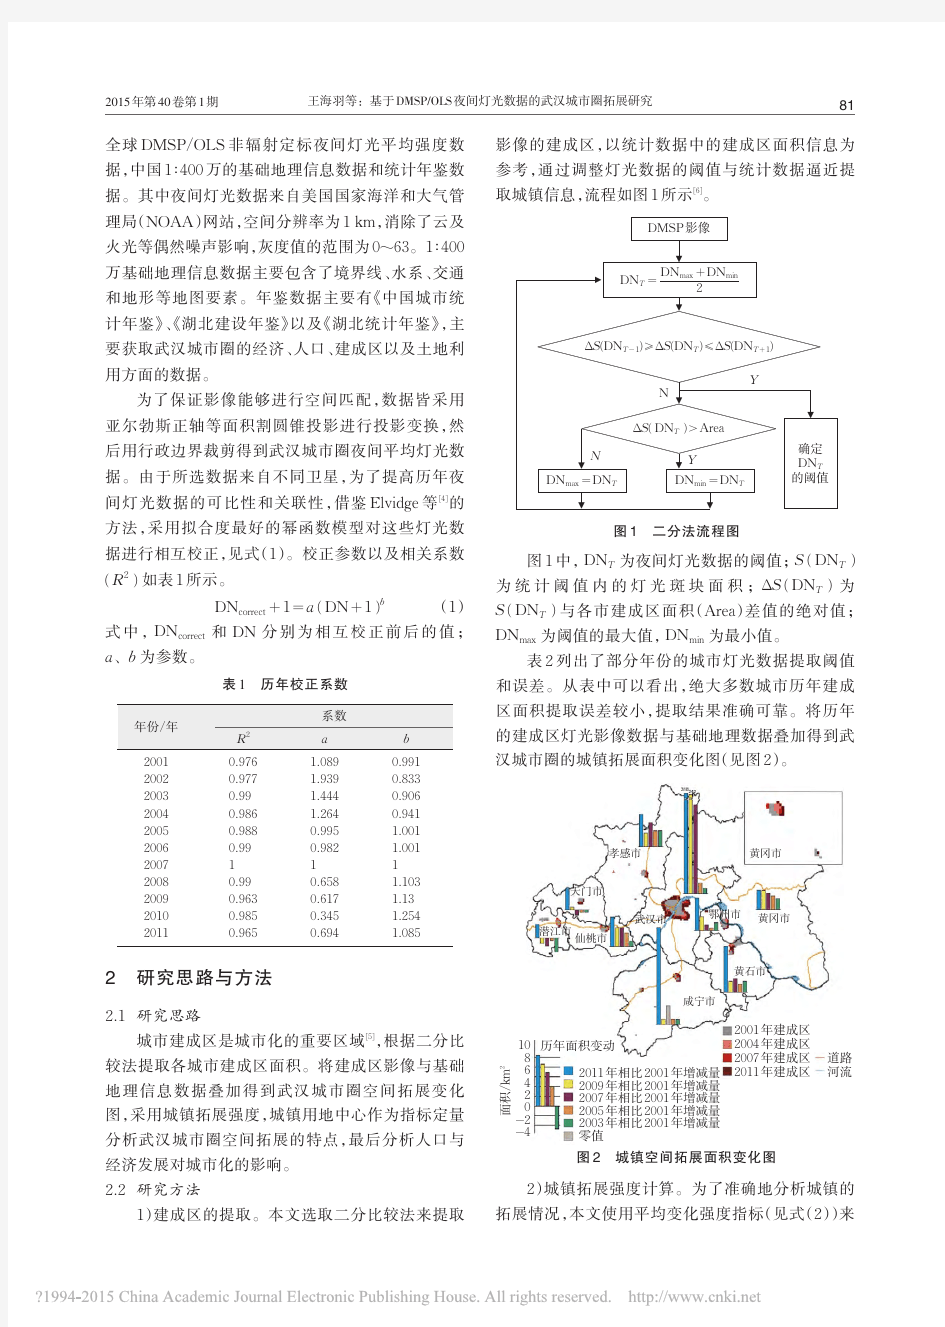 基于DMSP_OLS夜间灯光数据的武汉城市圈拓展研究_王海羽